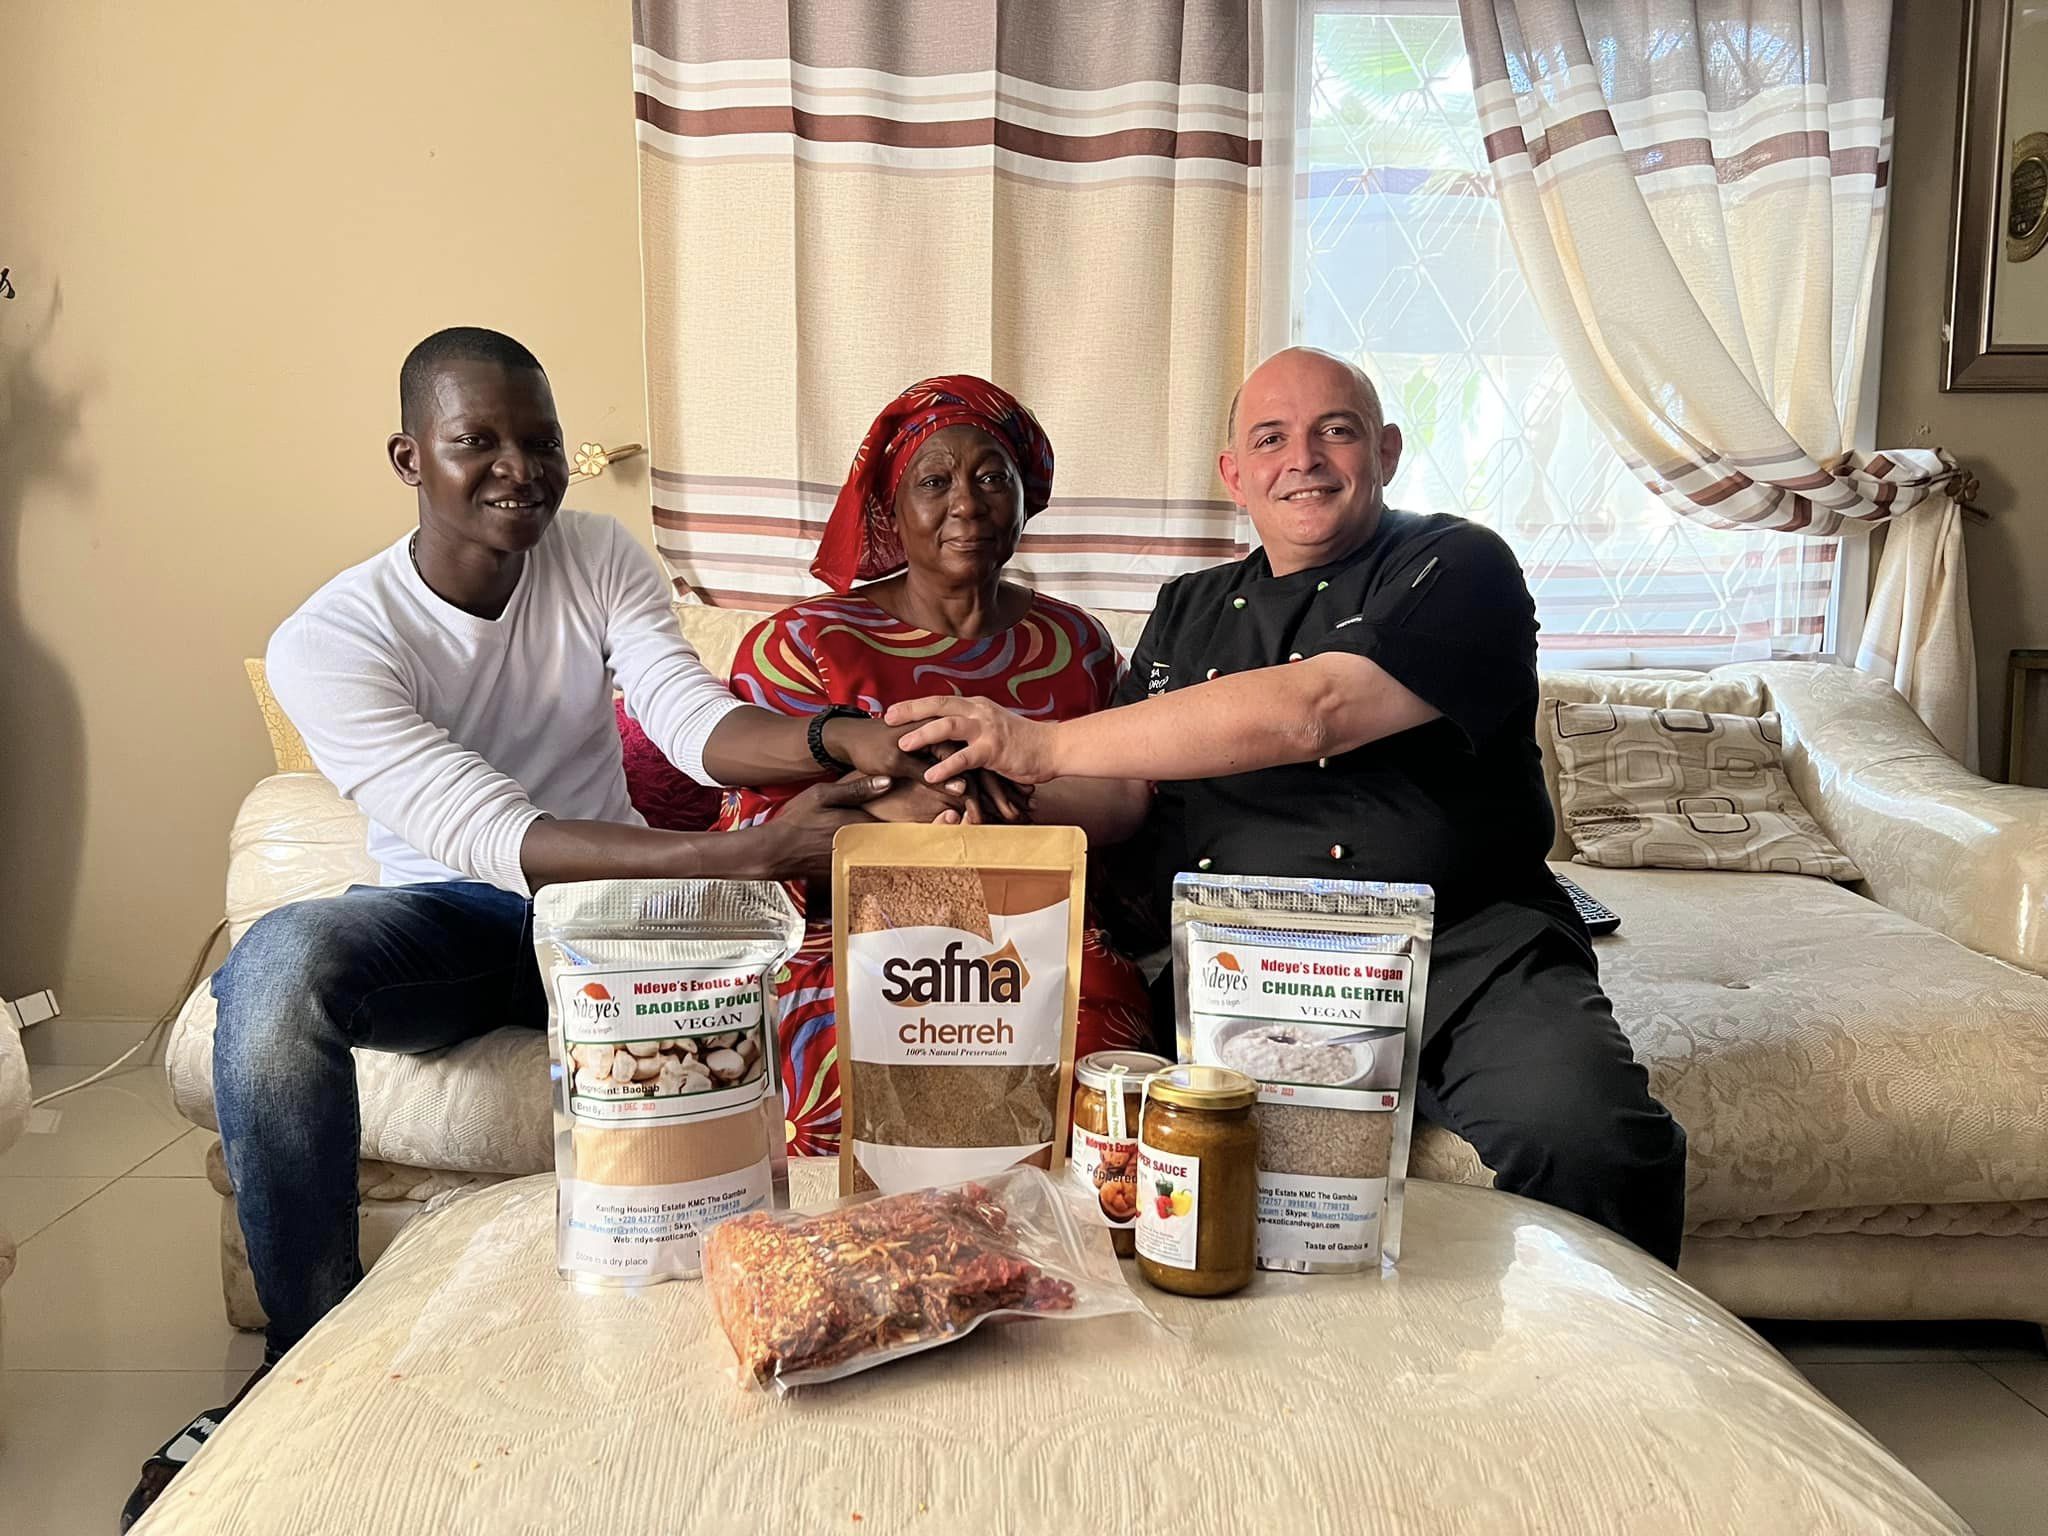 Foto 1 - Reggio e Gambia più vicini grazie al cibo:  il viaggio dello chef Cogliandro